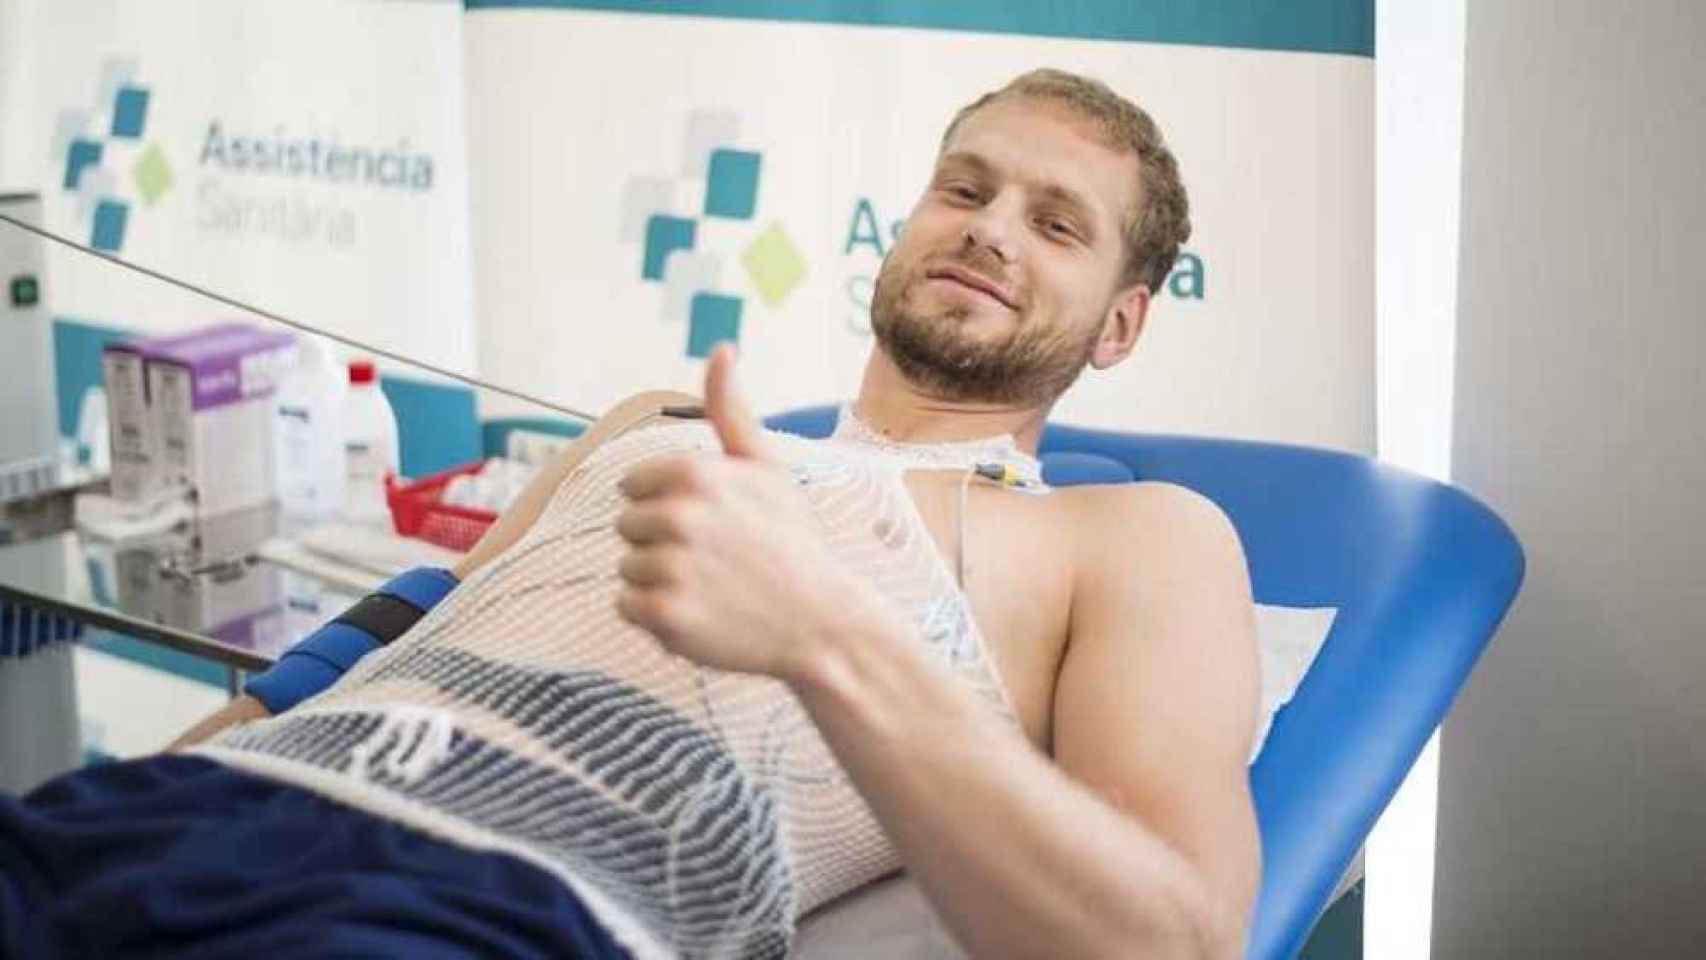 Una foto de un jugador azulgrana pasando la revisión médica con Assistència Sanitària, nuevo patrocinador de las secciones / FCB